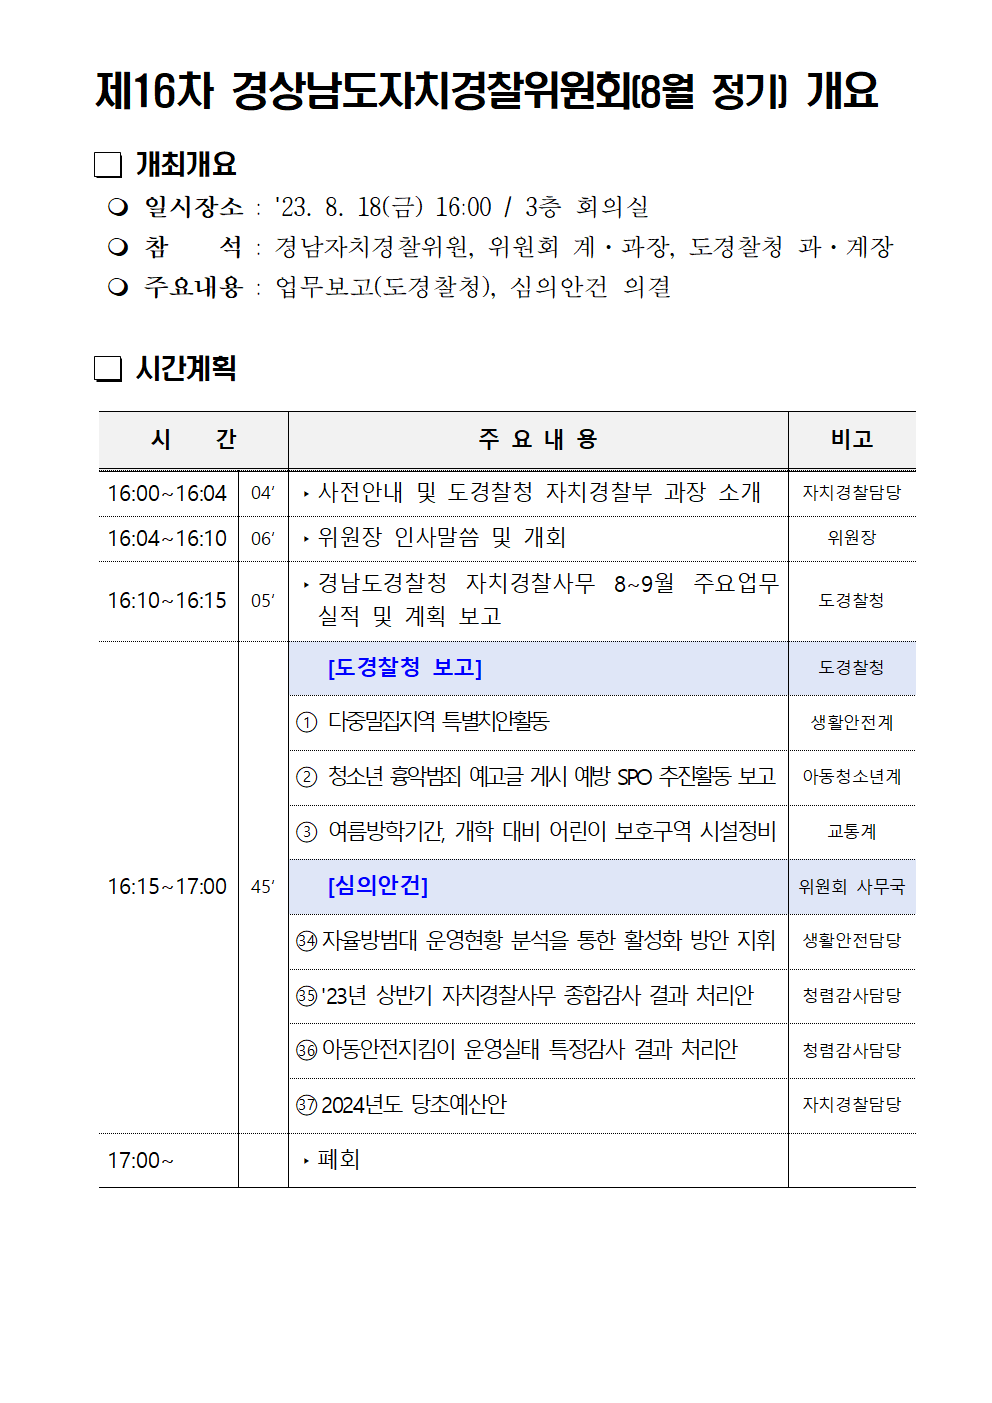 23년 제16차 경상남도자치경찰위원회(8월 정기) 개최 개요(블로그)의 파일 이미지